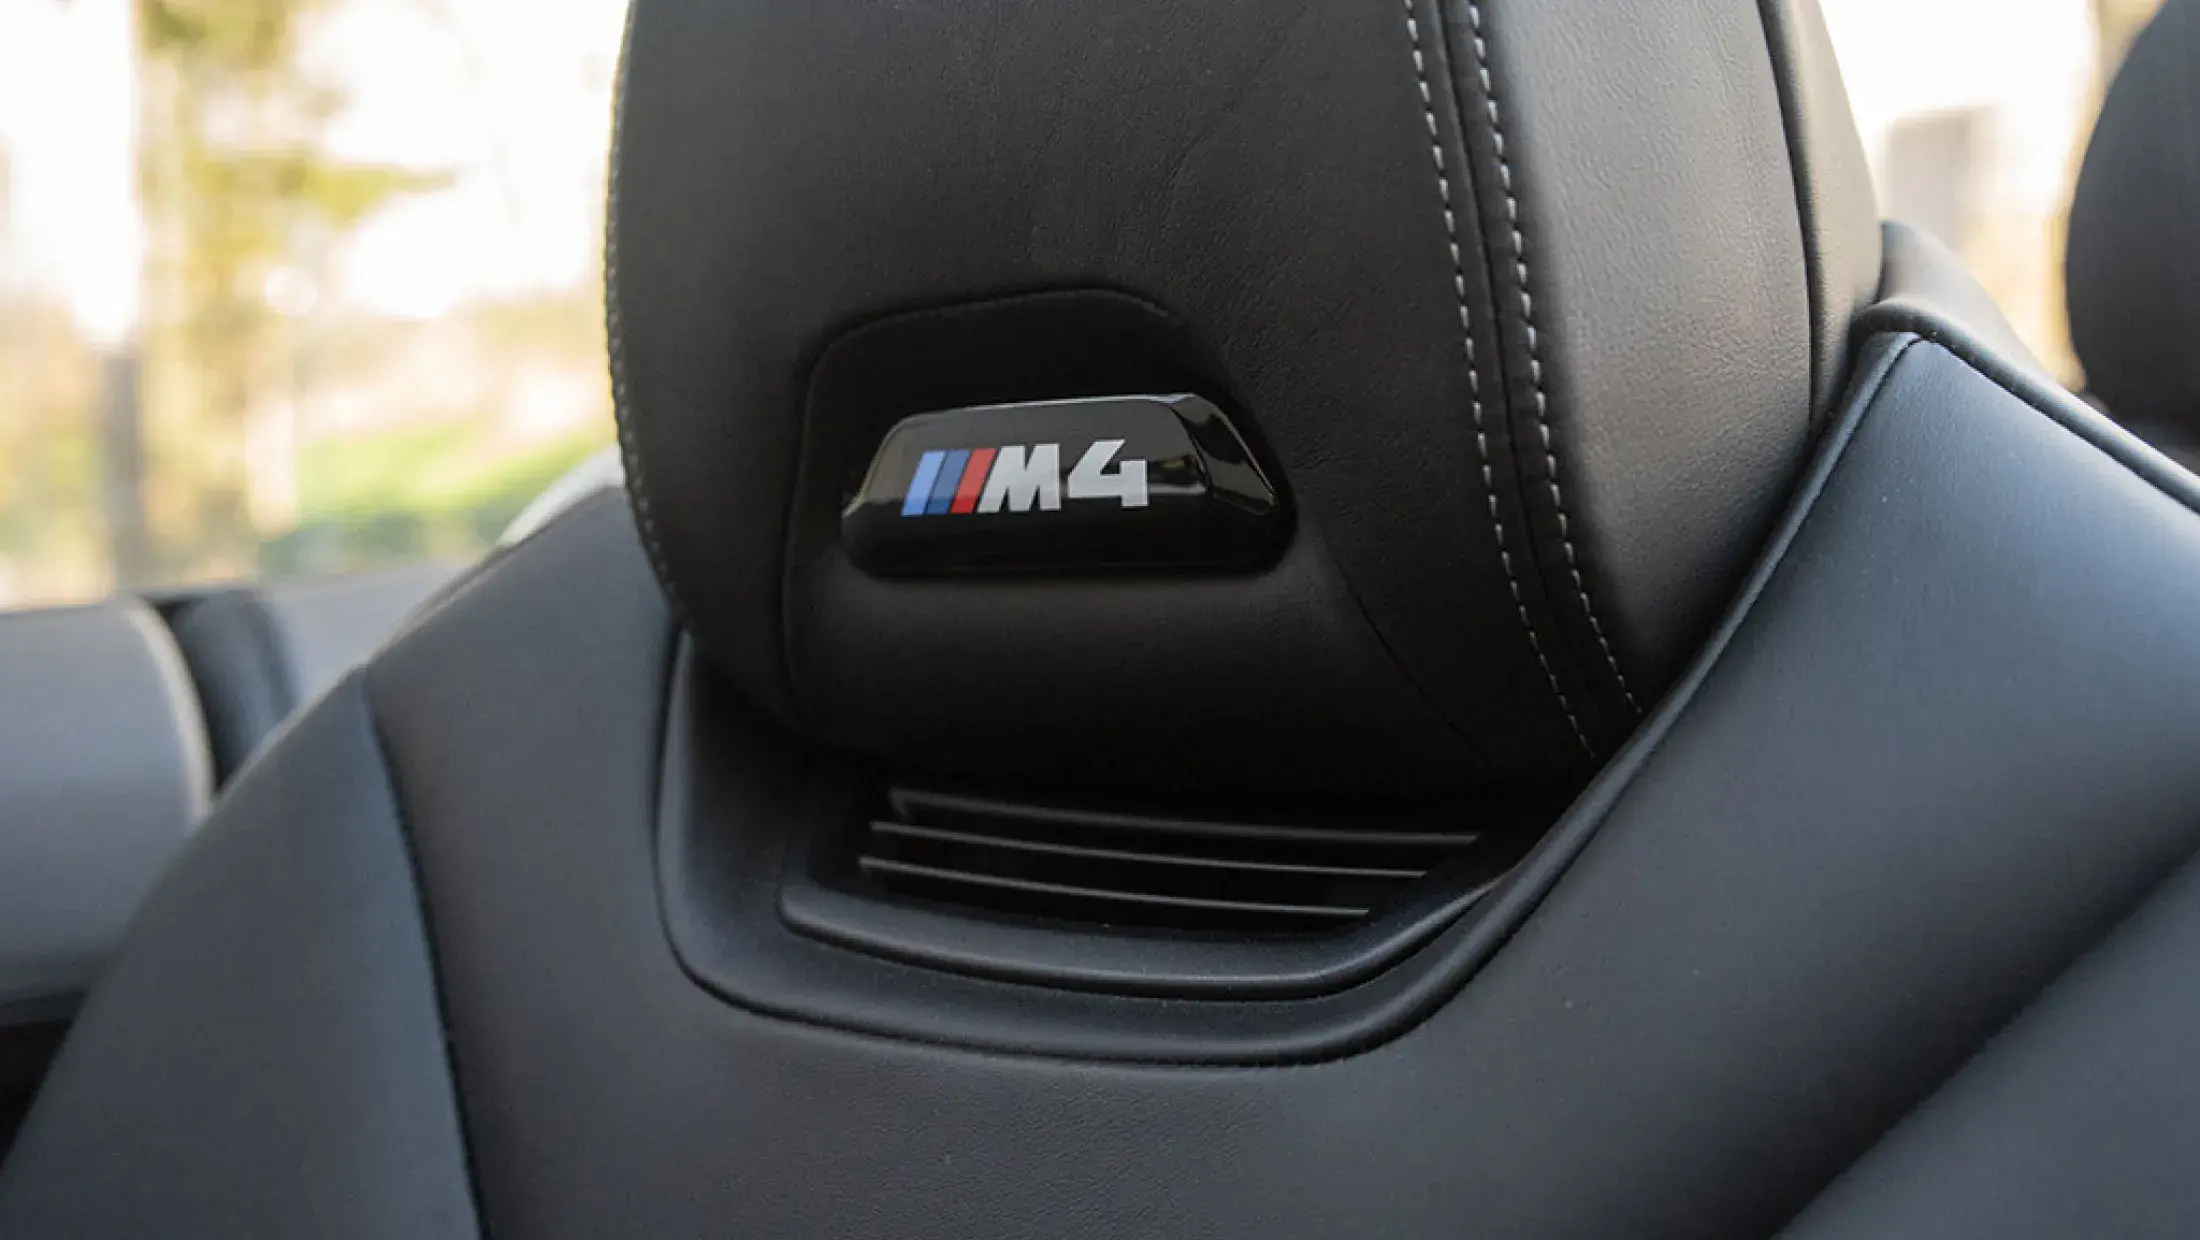 BMW M4 Competition Cabrio F83 Mineral White Metallic Volleder merino schwarz M Drivers package